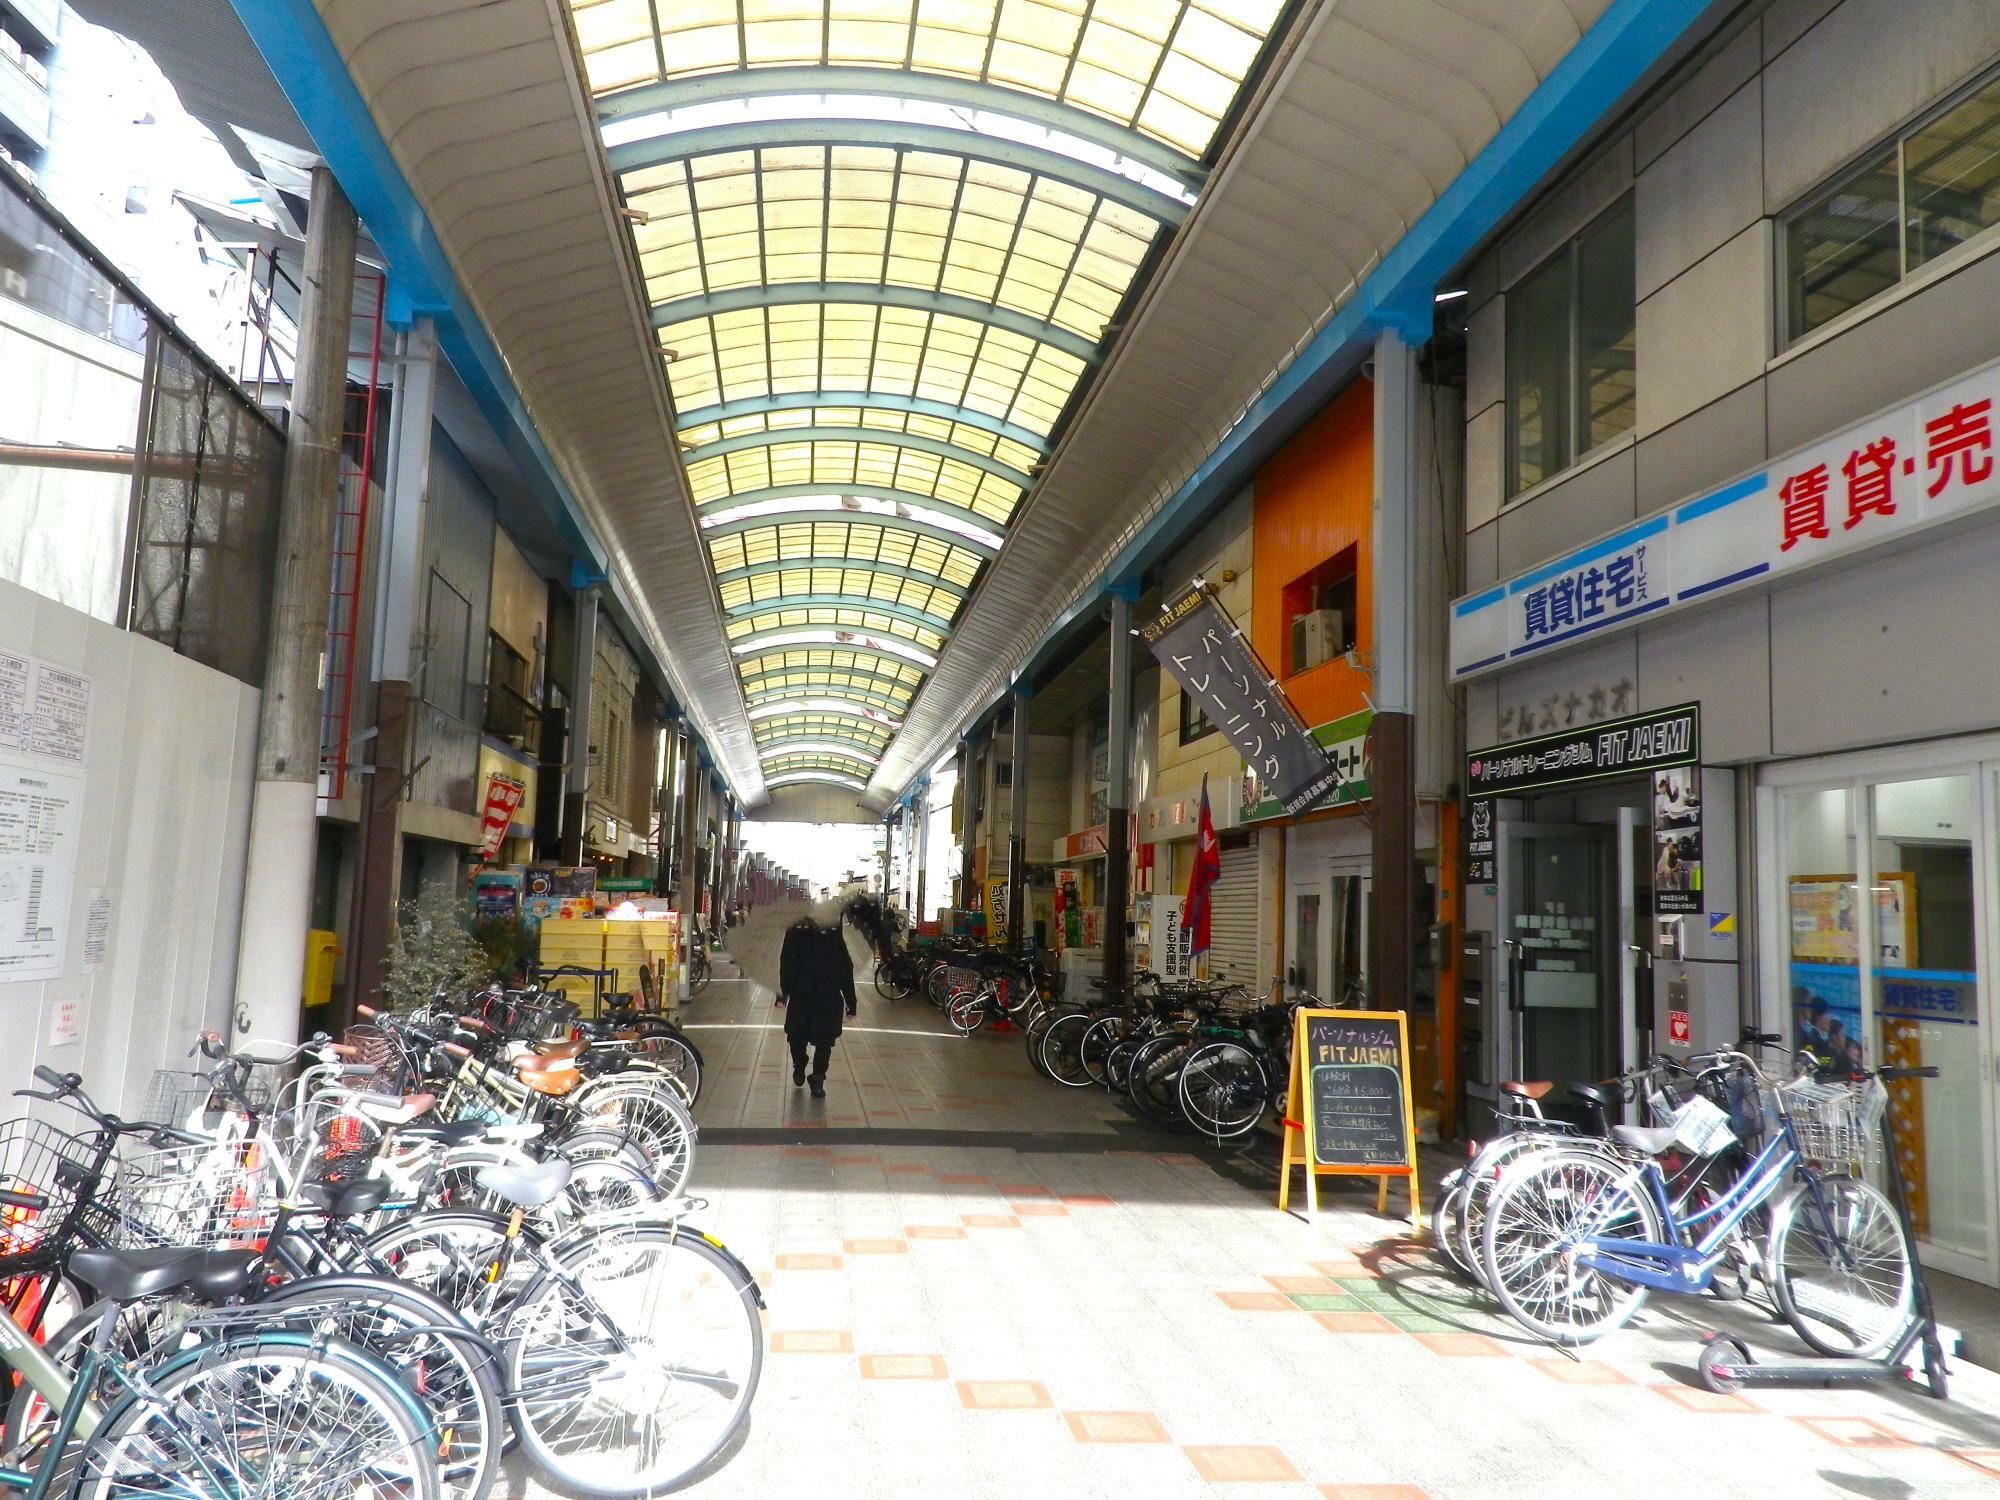 「塚本駅前通」を入ってスグ、左手にある「麻布珈琲店」。